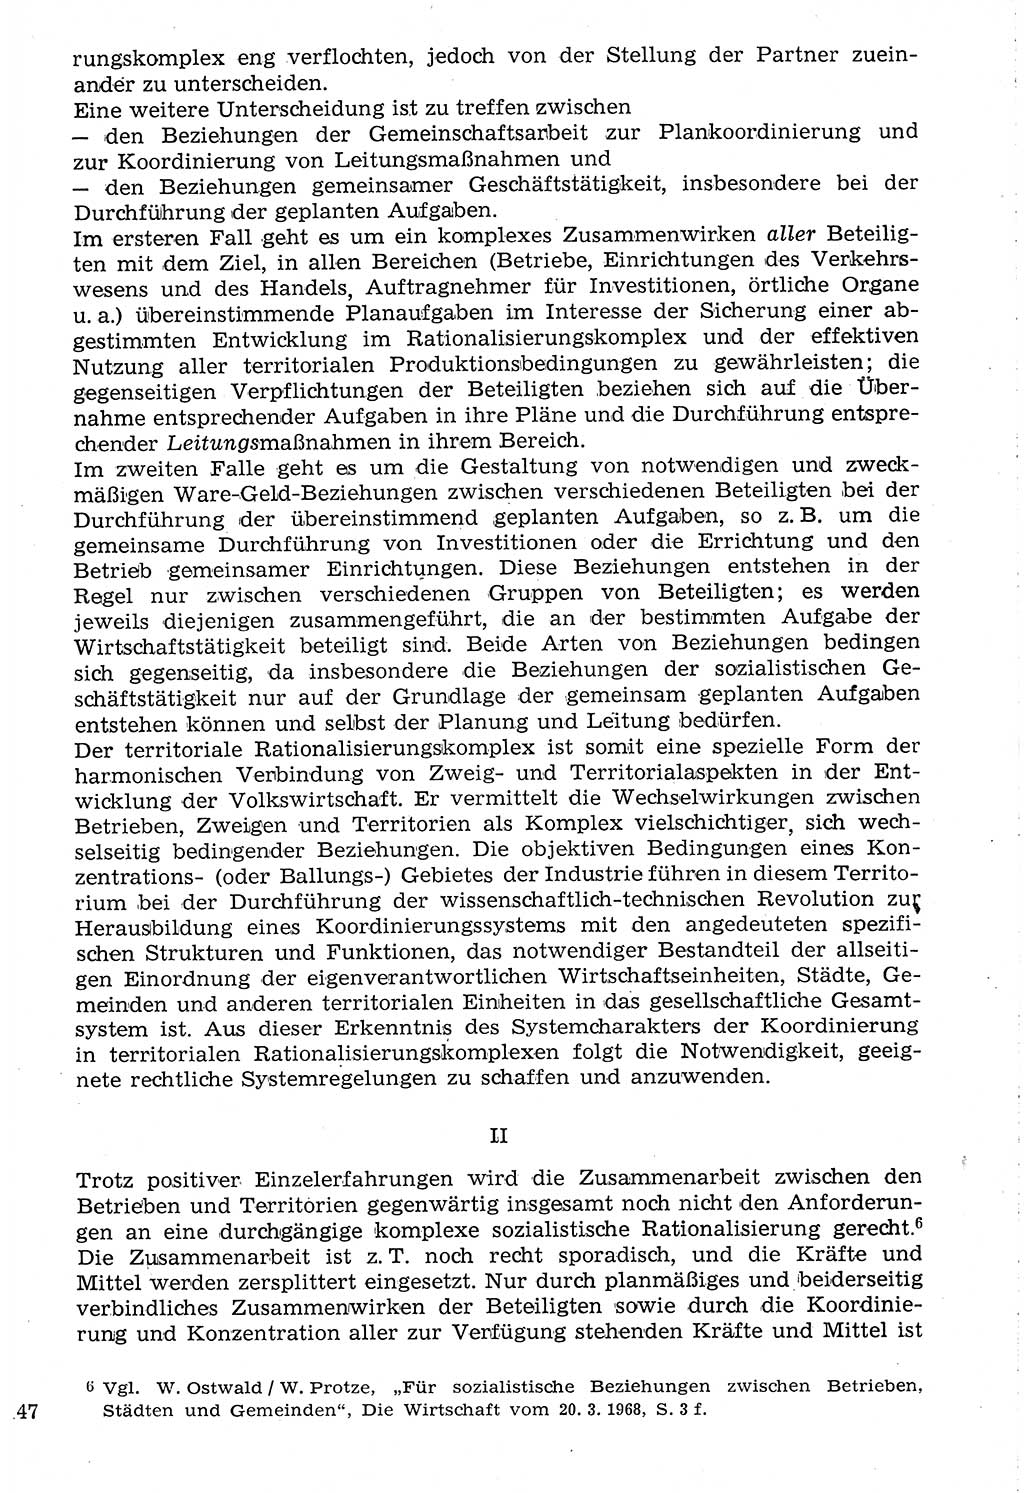 Staat und Recht (StuR), 17. Jahrgang [Deutsche Demokratische Republik (DDR)] 1968, Seite 1147 (StuR DDR 1968, S. 1147)